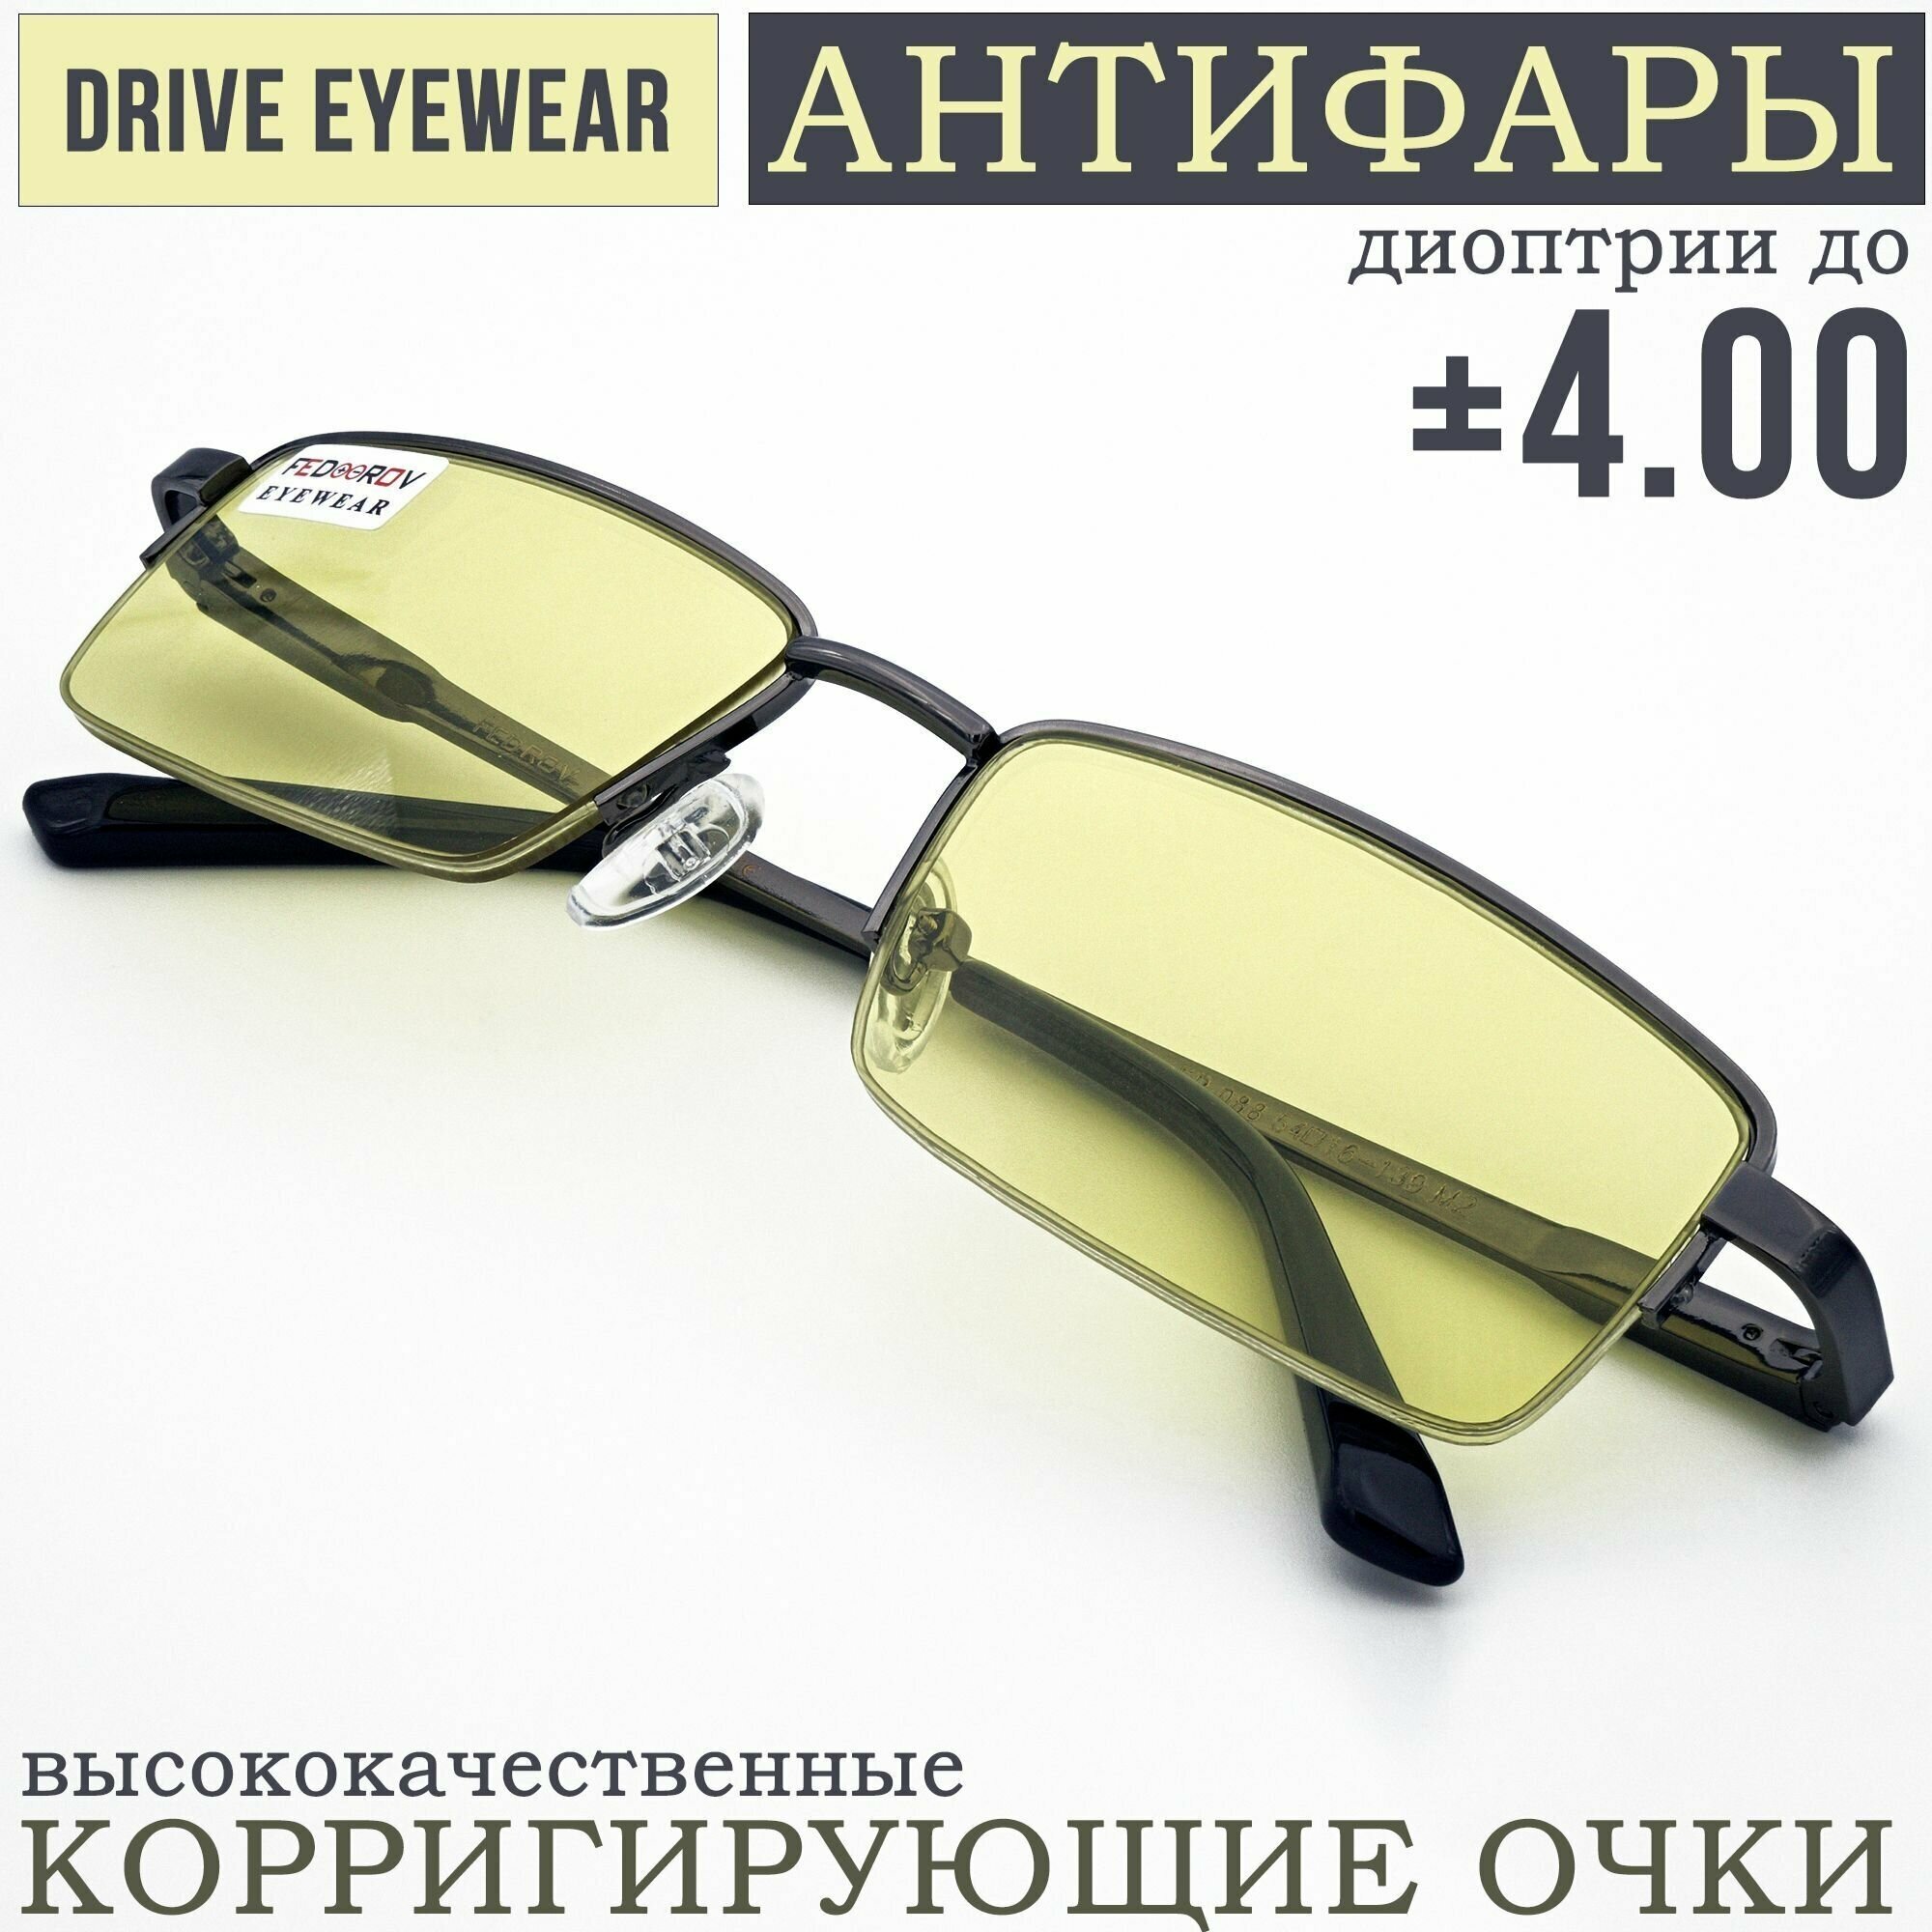 Готовые очки водительские Антифары с диоптриями +0,50